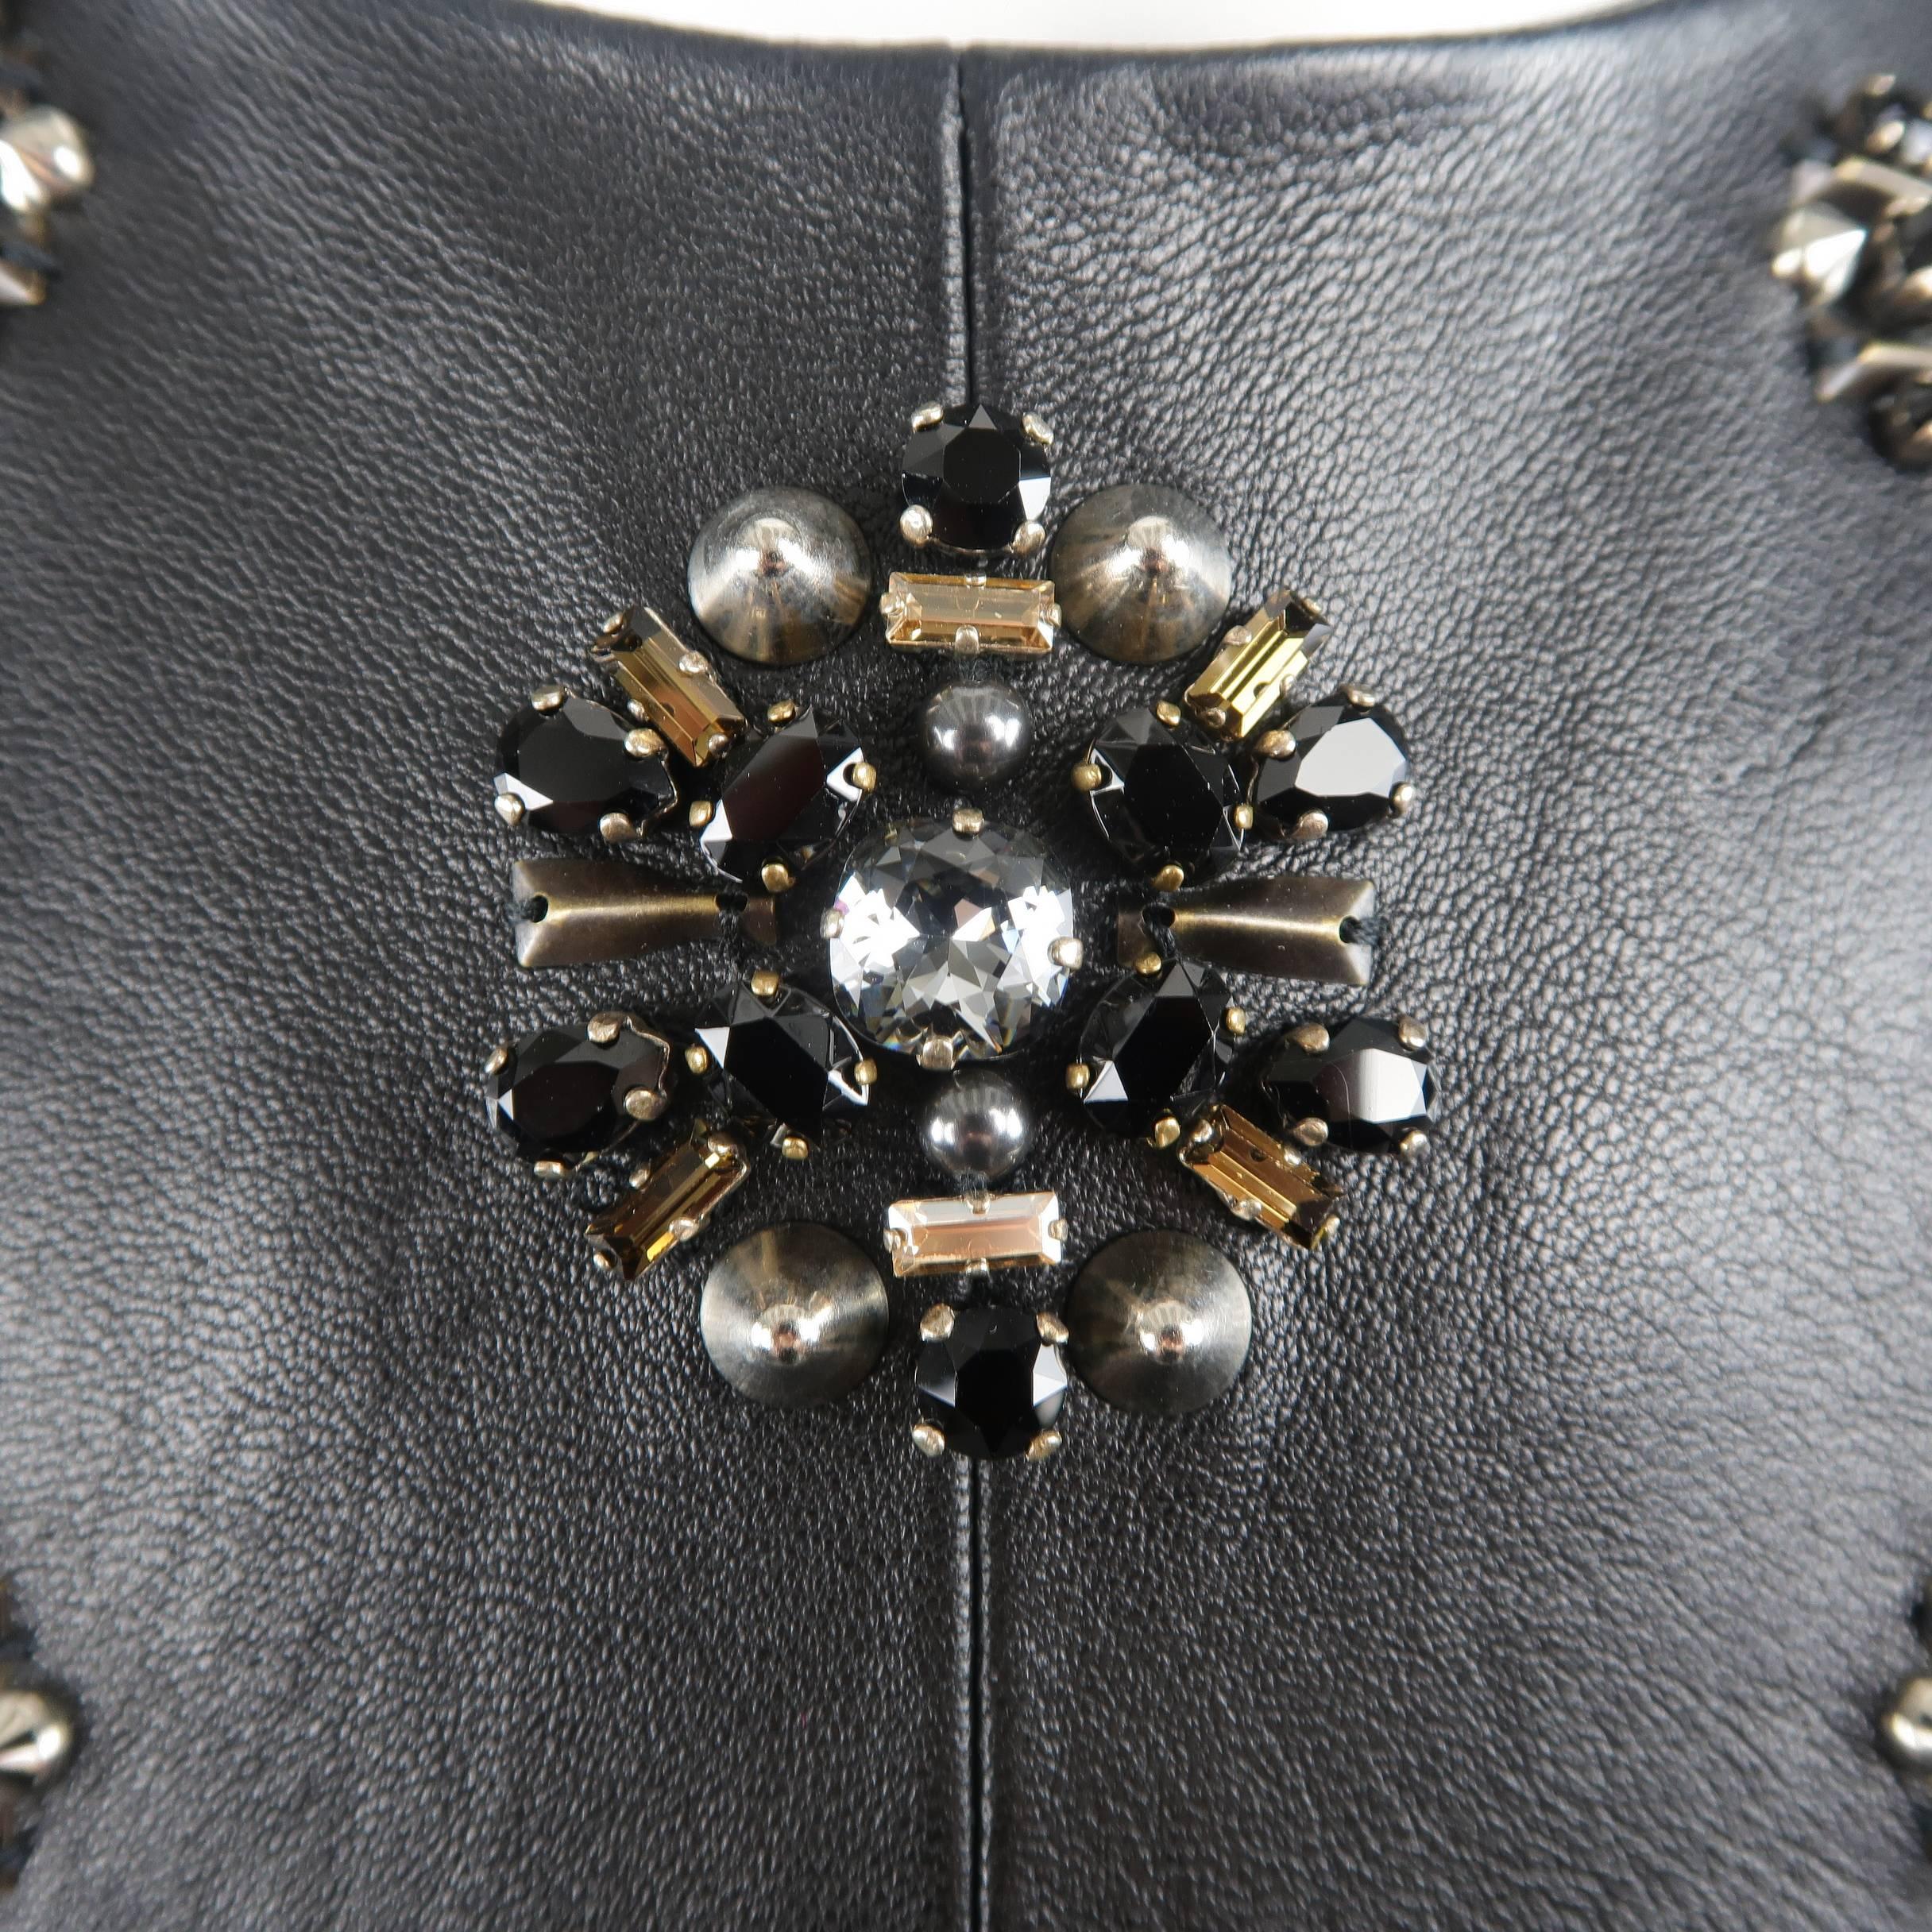 Black Saint Laurent by Hedi Slimane Embellished Leather Runway Dress, Fall 2013